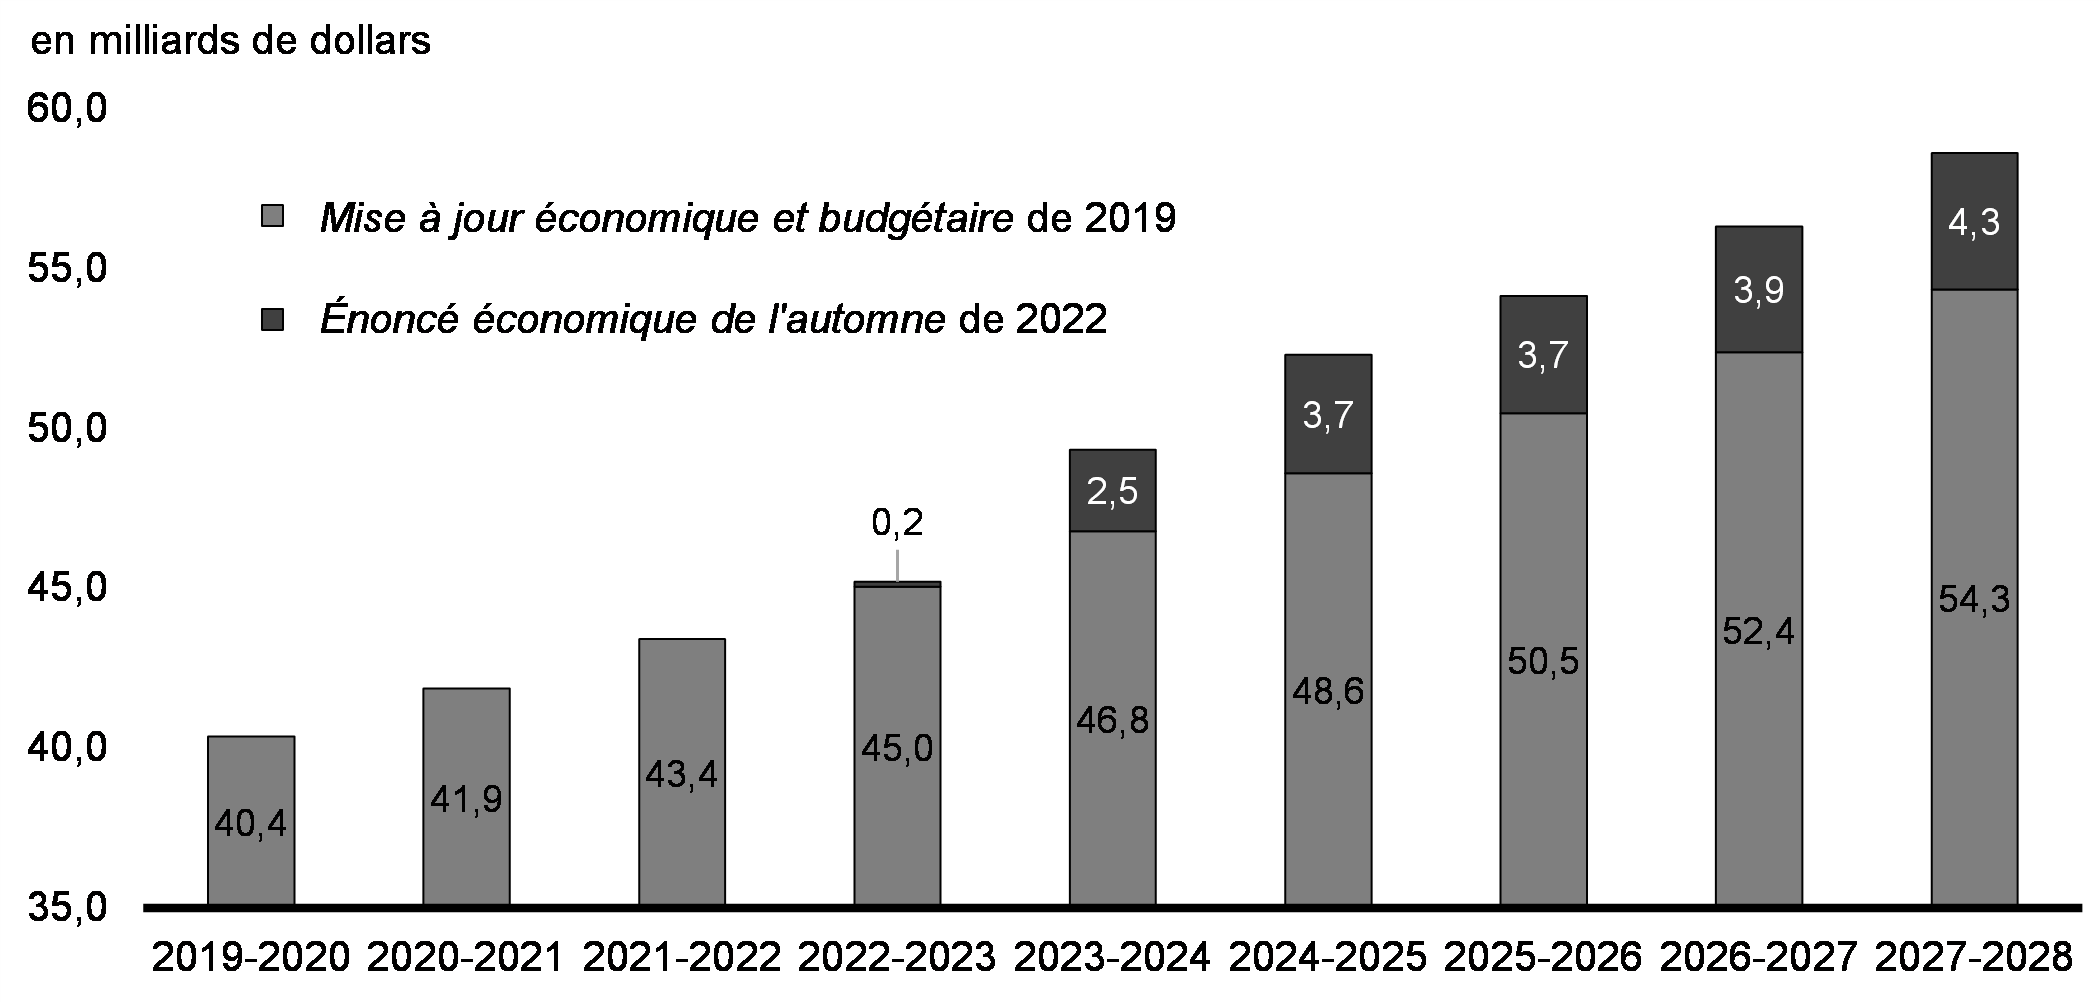 Graphique A1.3: Prévision du Transfert canadien en matière de santé – Mise à jour économique et budgétaire de 2019 par rapport à l'Énoncé économique de l'automne de 2022